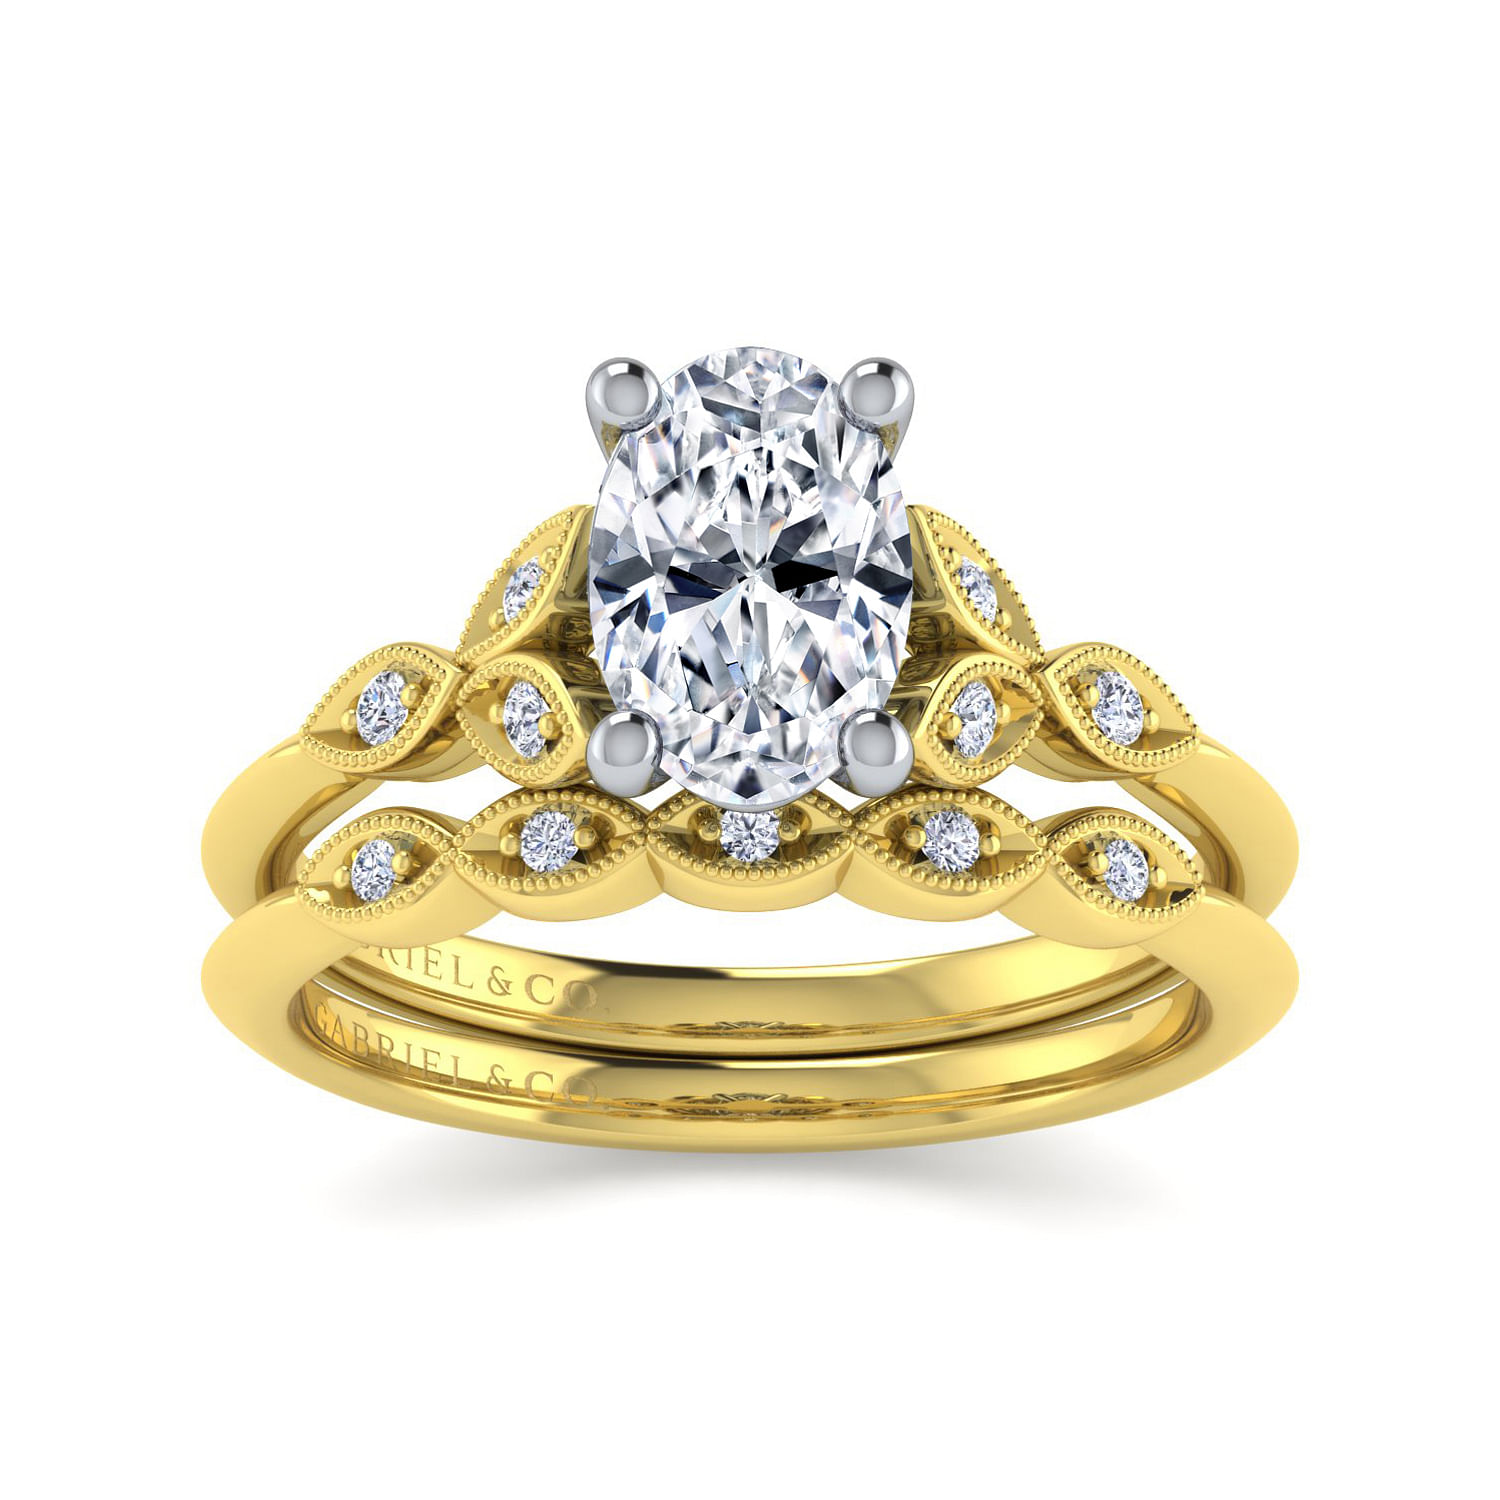 Vintage Inspired 14K White-Yellow Gold Split Shank Oval Diamond Engagement Ring